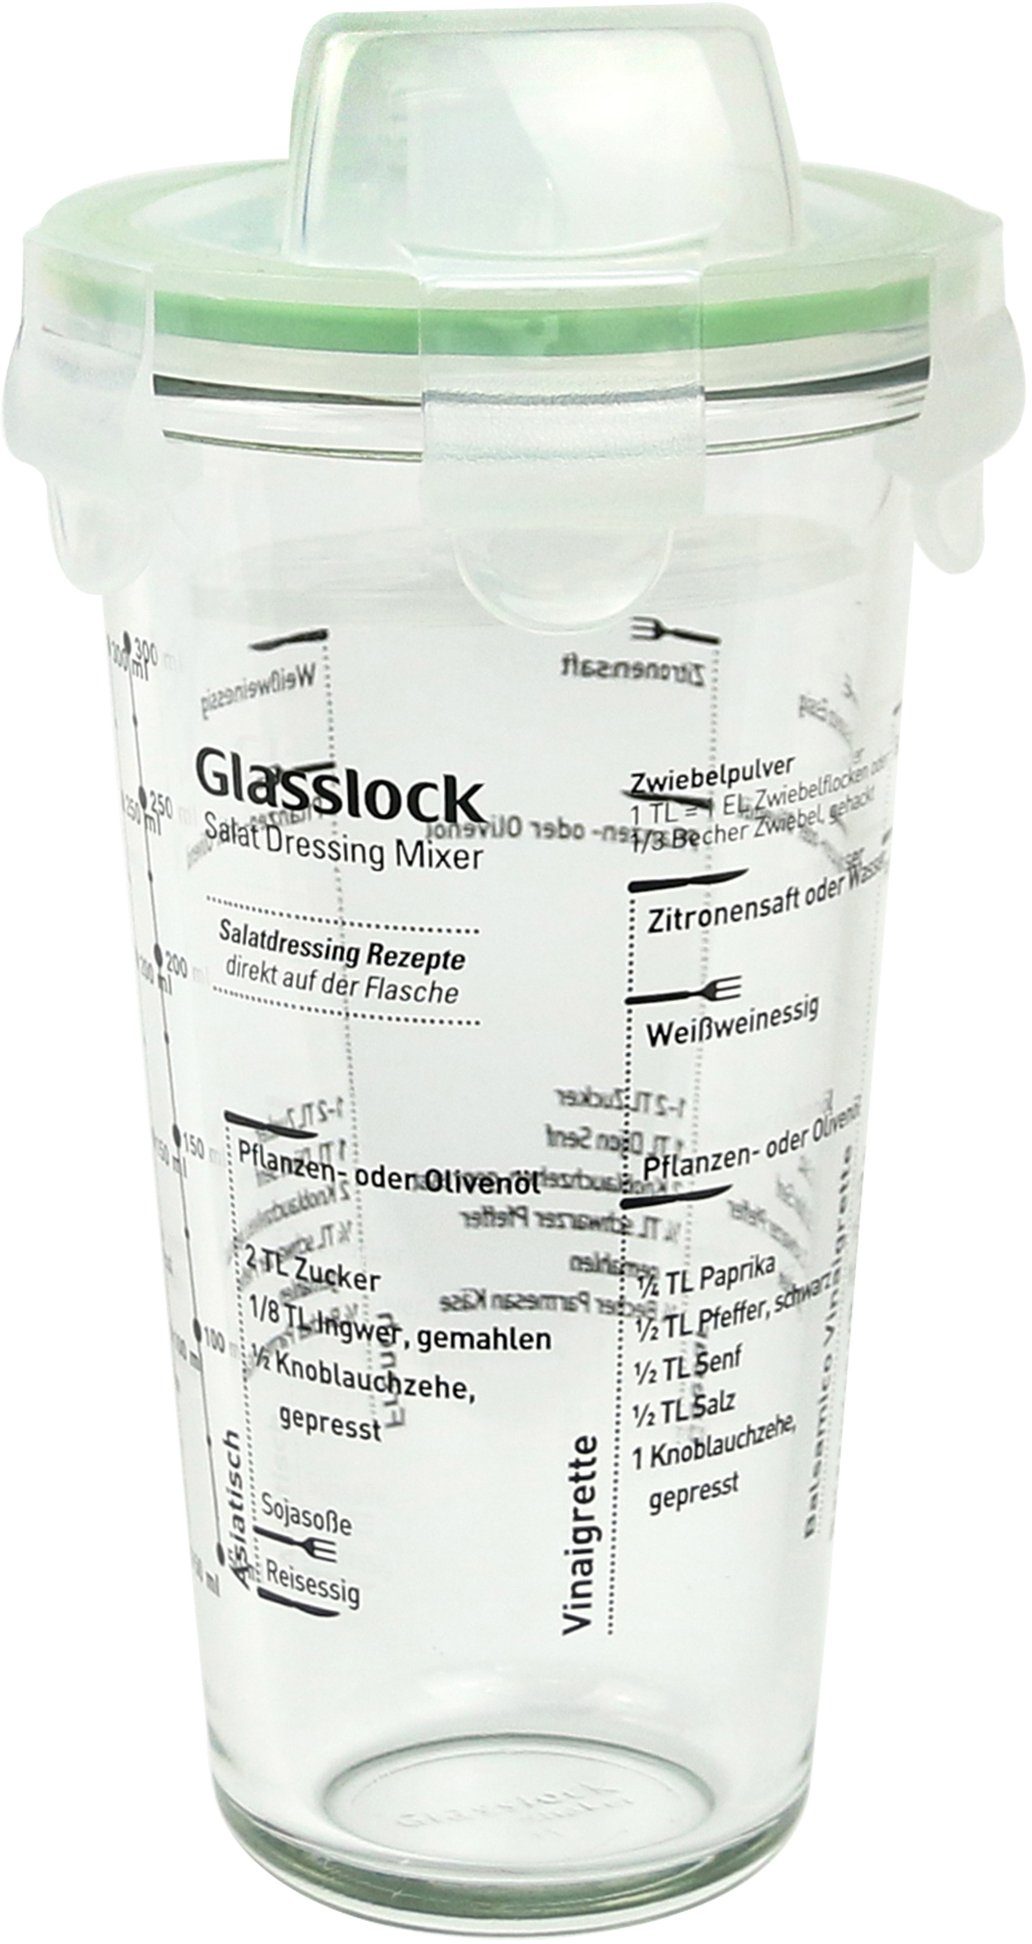 Glas, 450 Shaker), ml (Cocktail Glasslock Dressing Shaker,